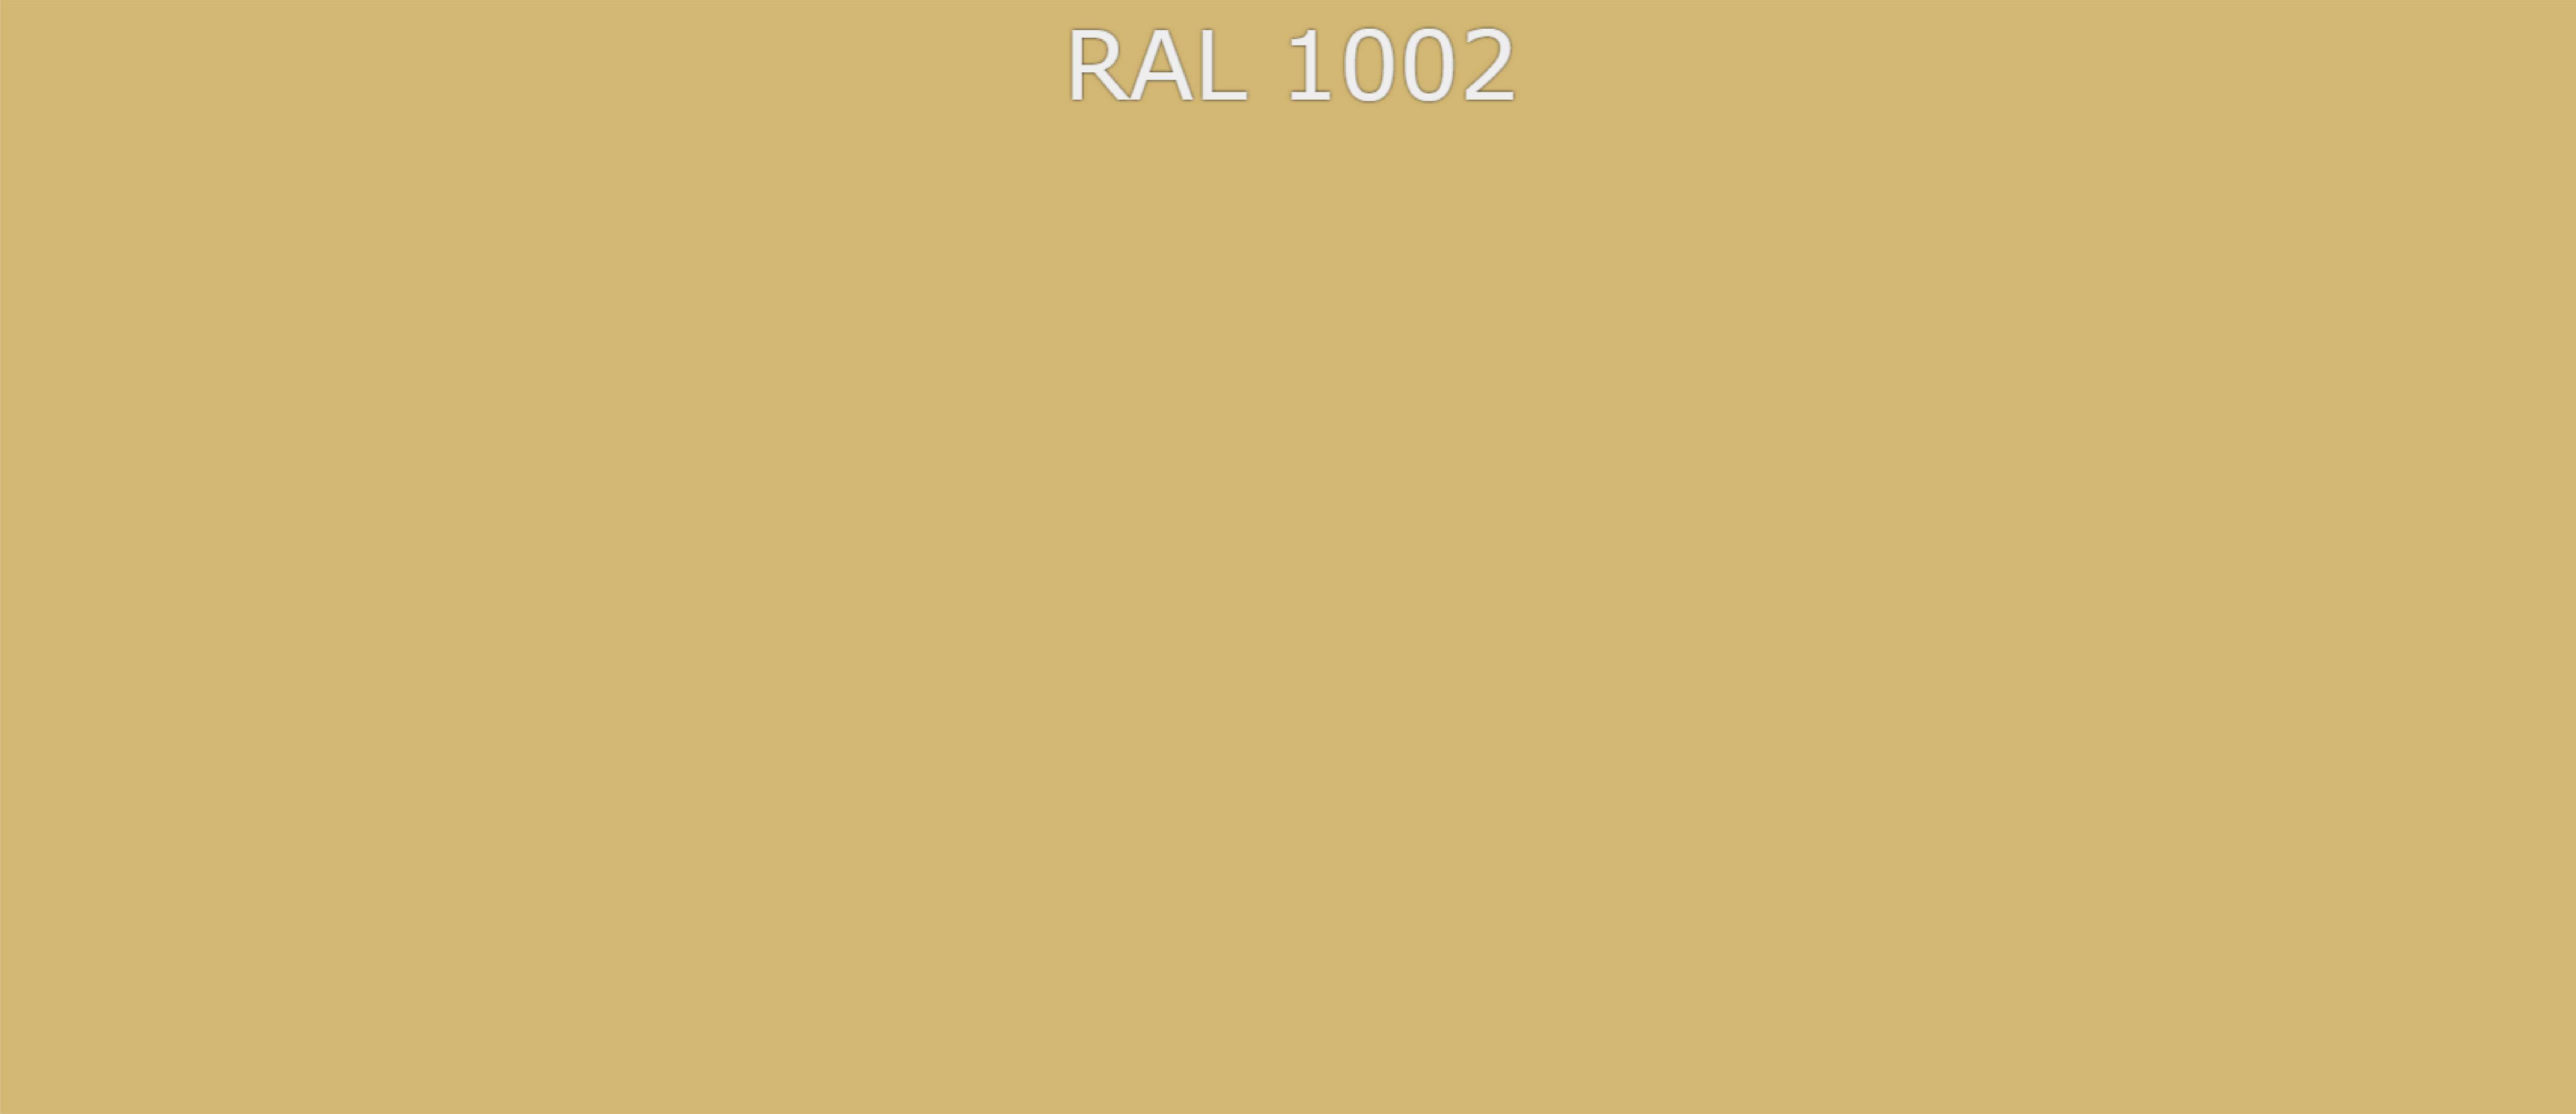 RAL 1002 песочно-жёлтый